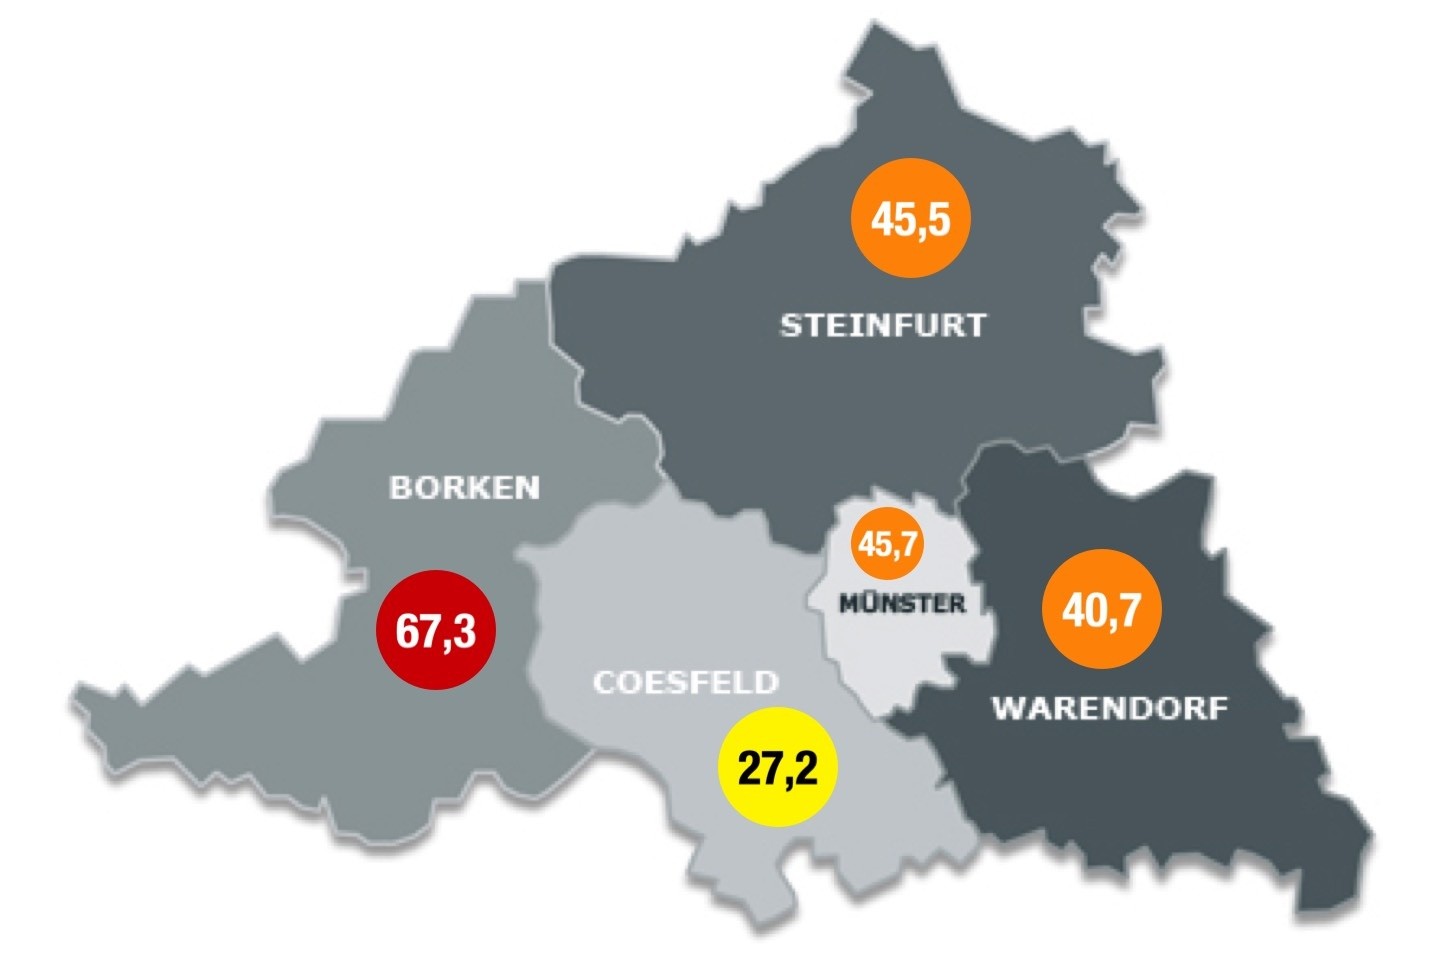 Corona-Lockerungen,Kreis Warendorf,Münster,Steinfurt,Coesfeld,Bprken,Sieben Tage Inzidenz